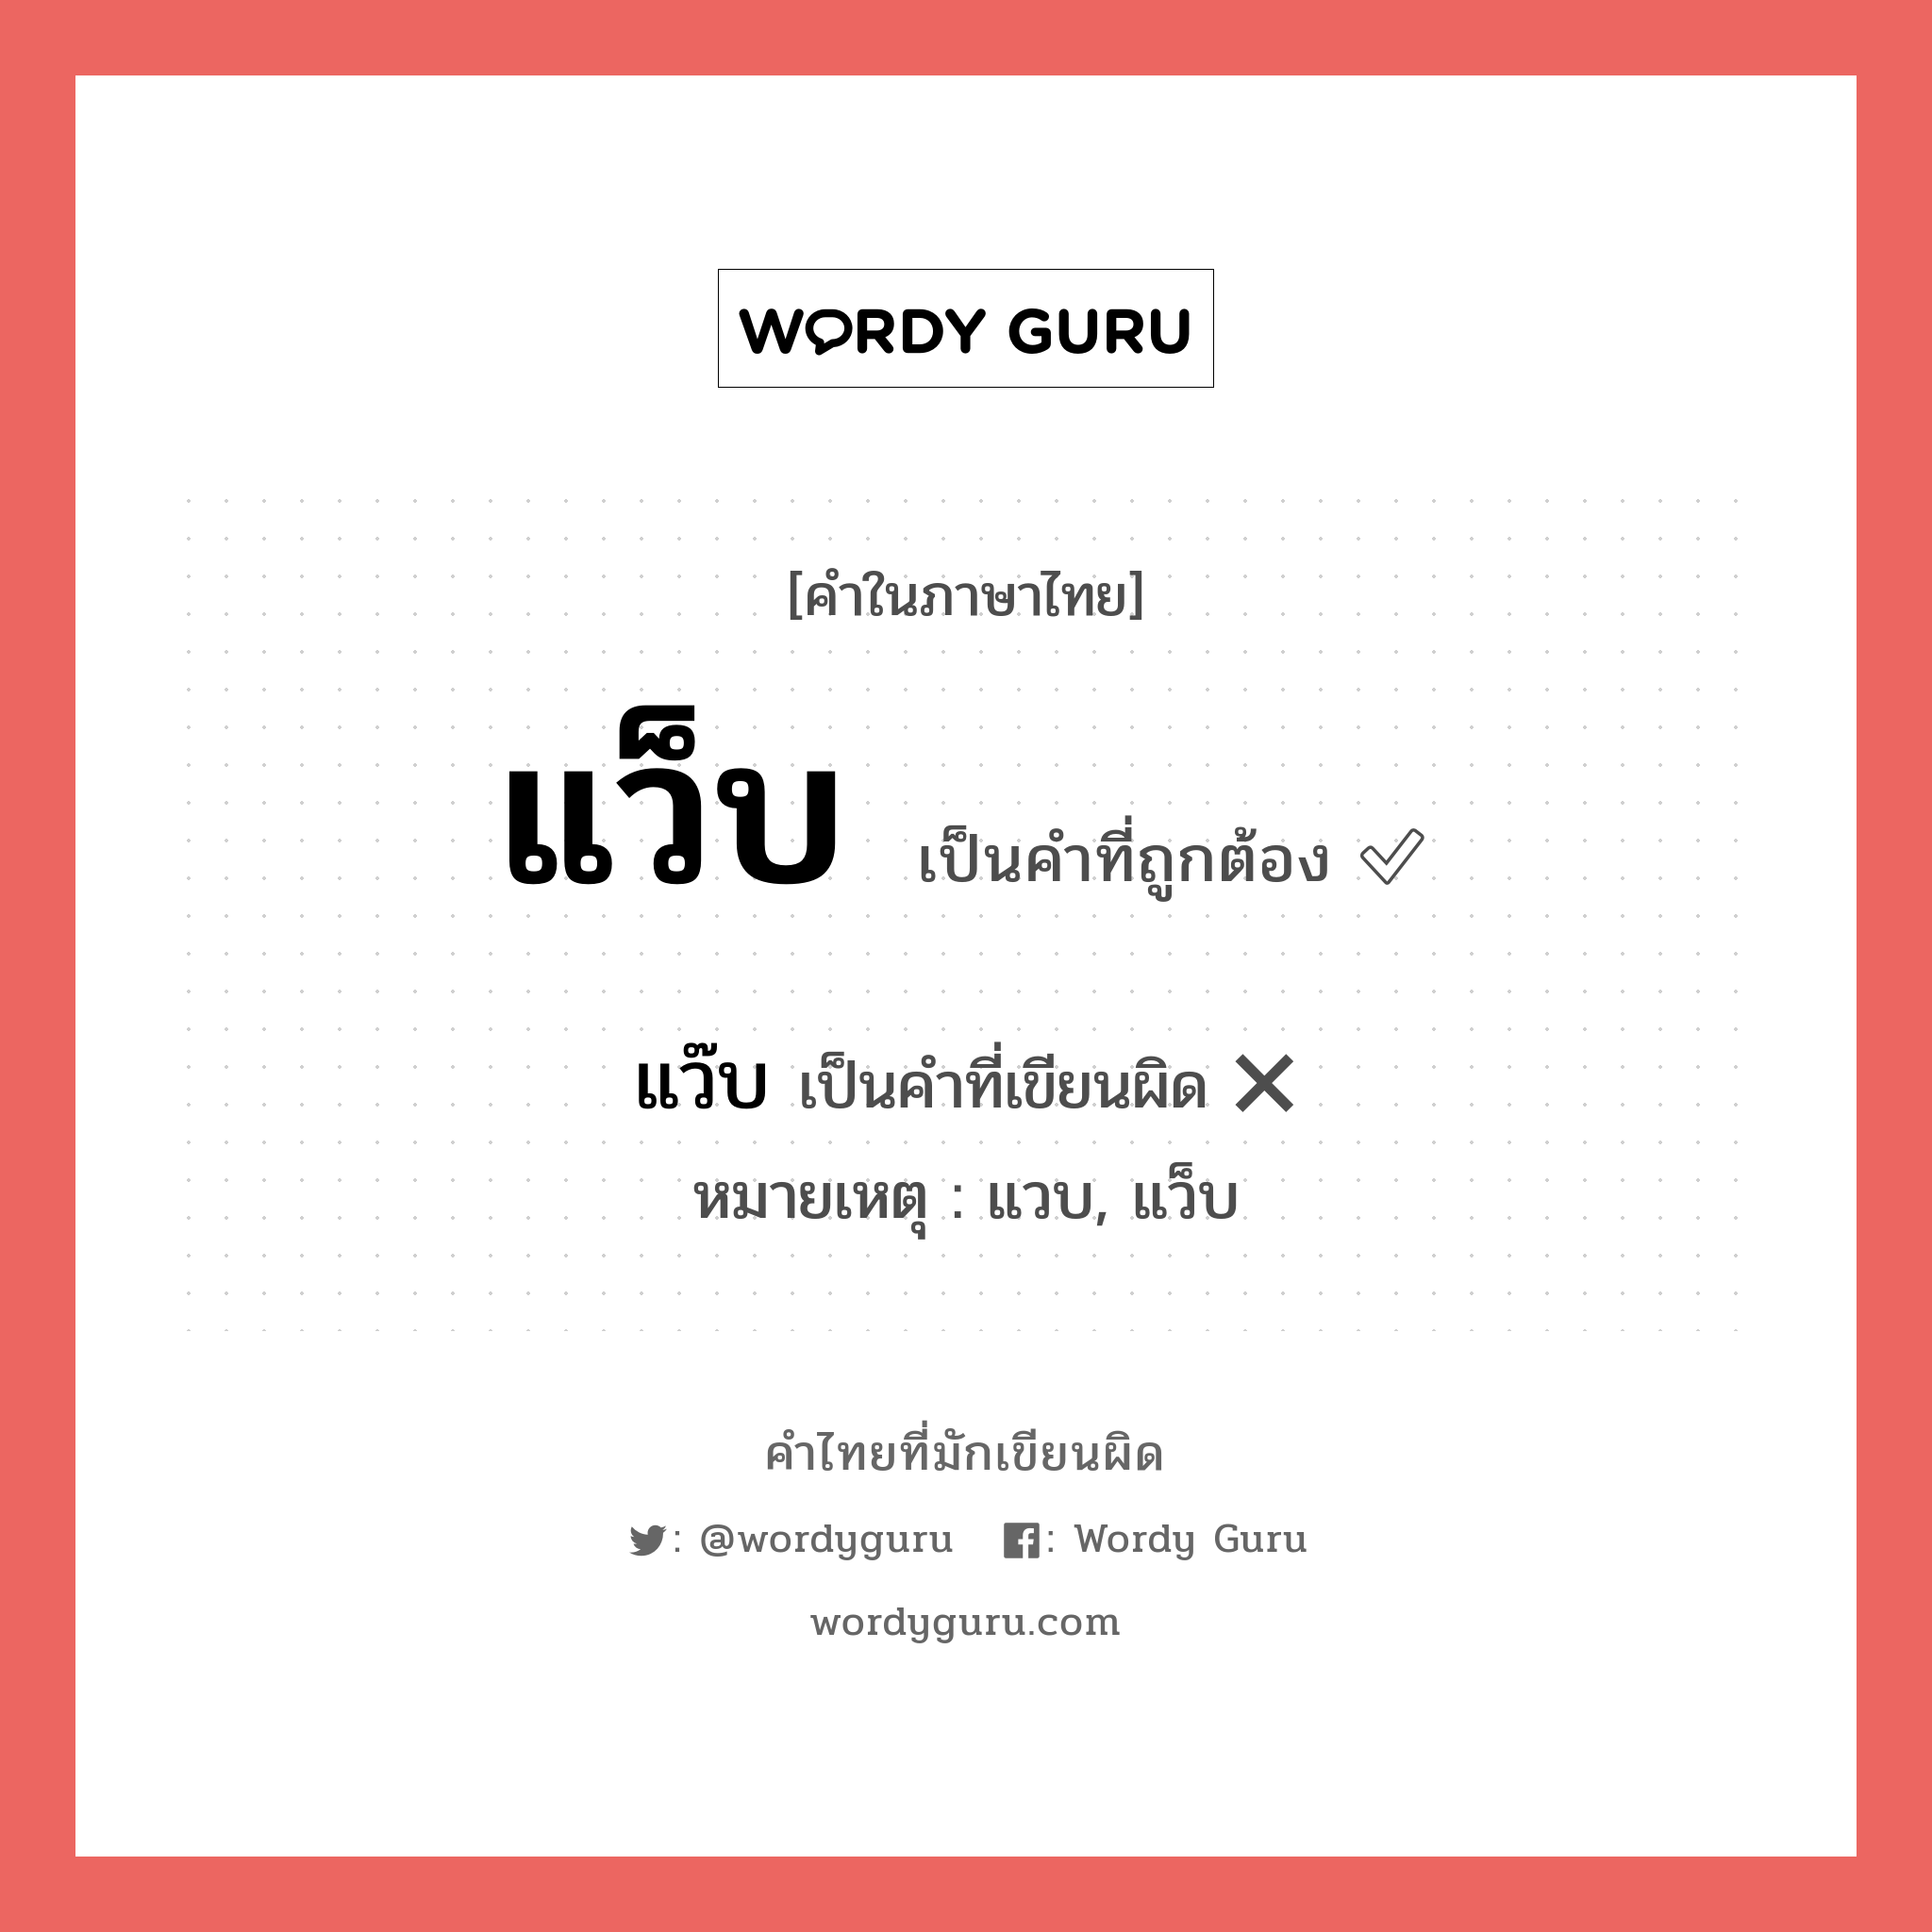 แว๊บ หรือ แว็บ คำไหนเขียนถูก?, คำในภาษาไทยที่มักเขียนผิด แว๊บ คำที่ผิด ❌ แว็บ หมายเหตุ แวบ, แว็บ